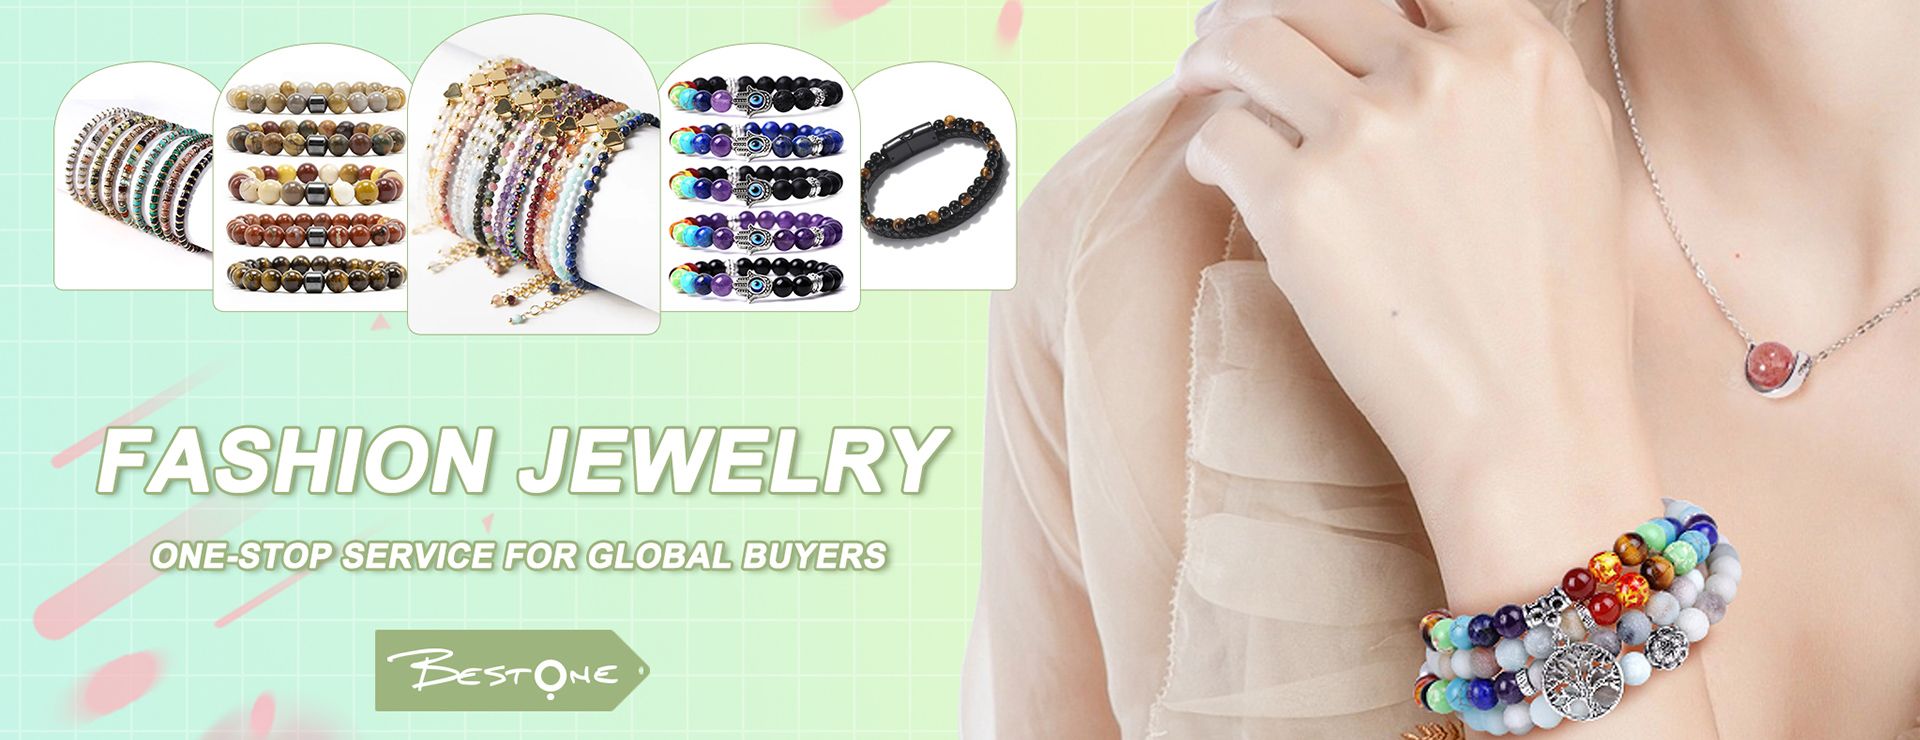 Bracelets for Women, Best Fashion Jewelry Bracelets by AVON